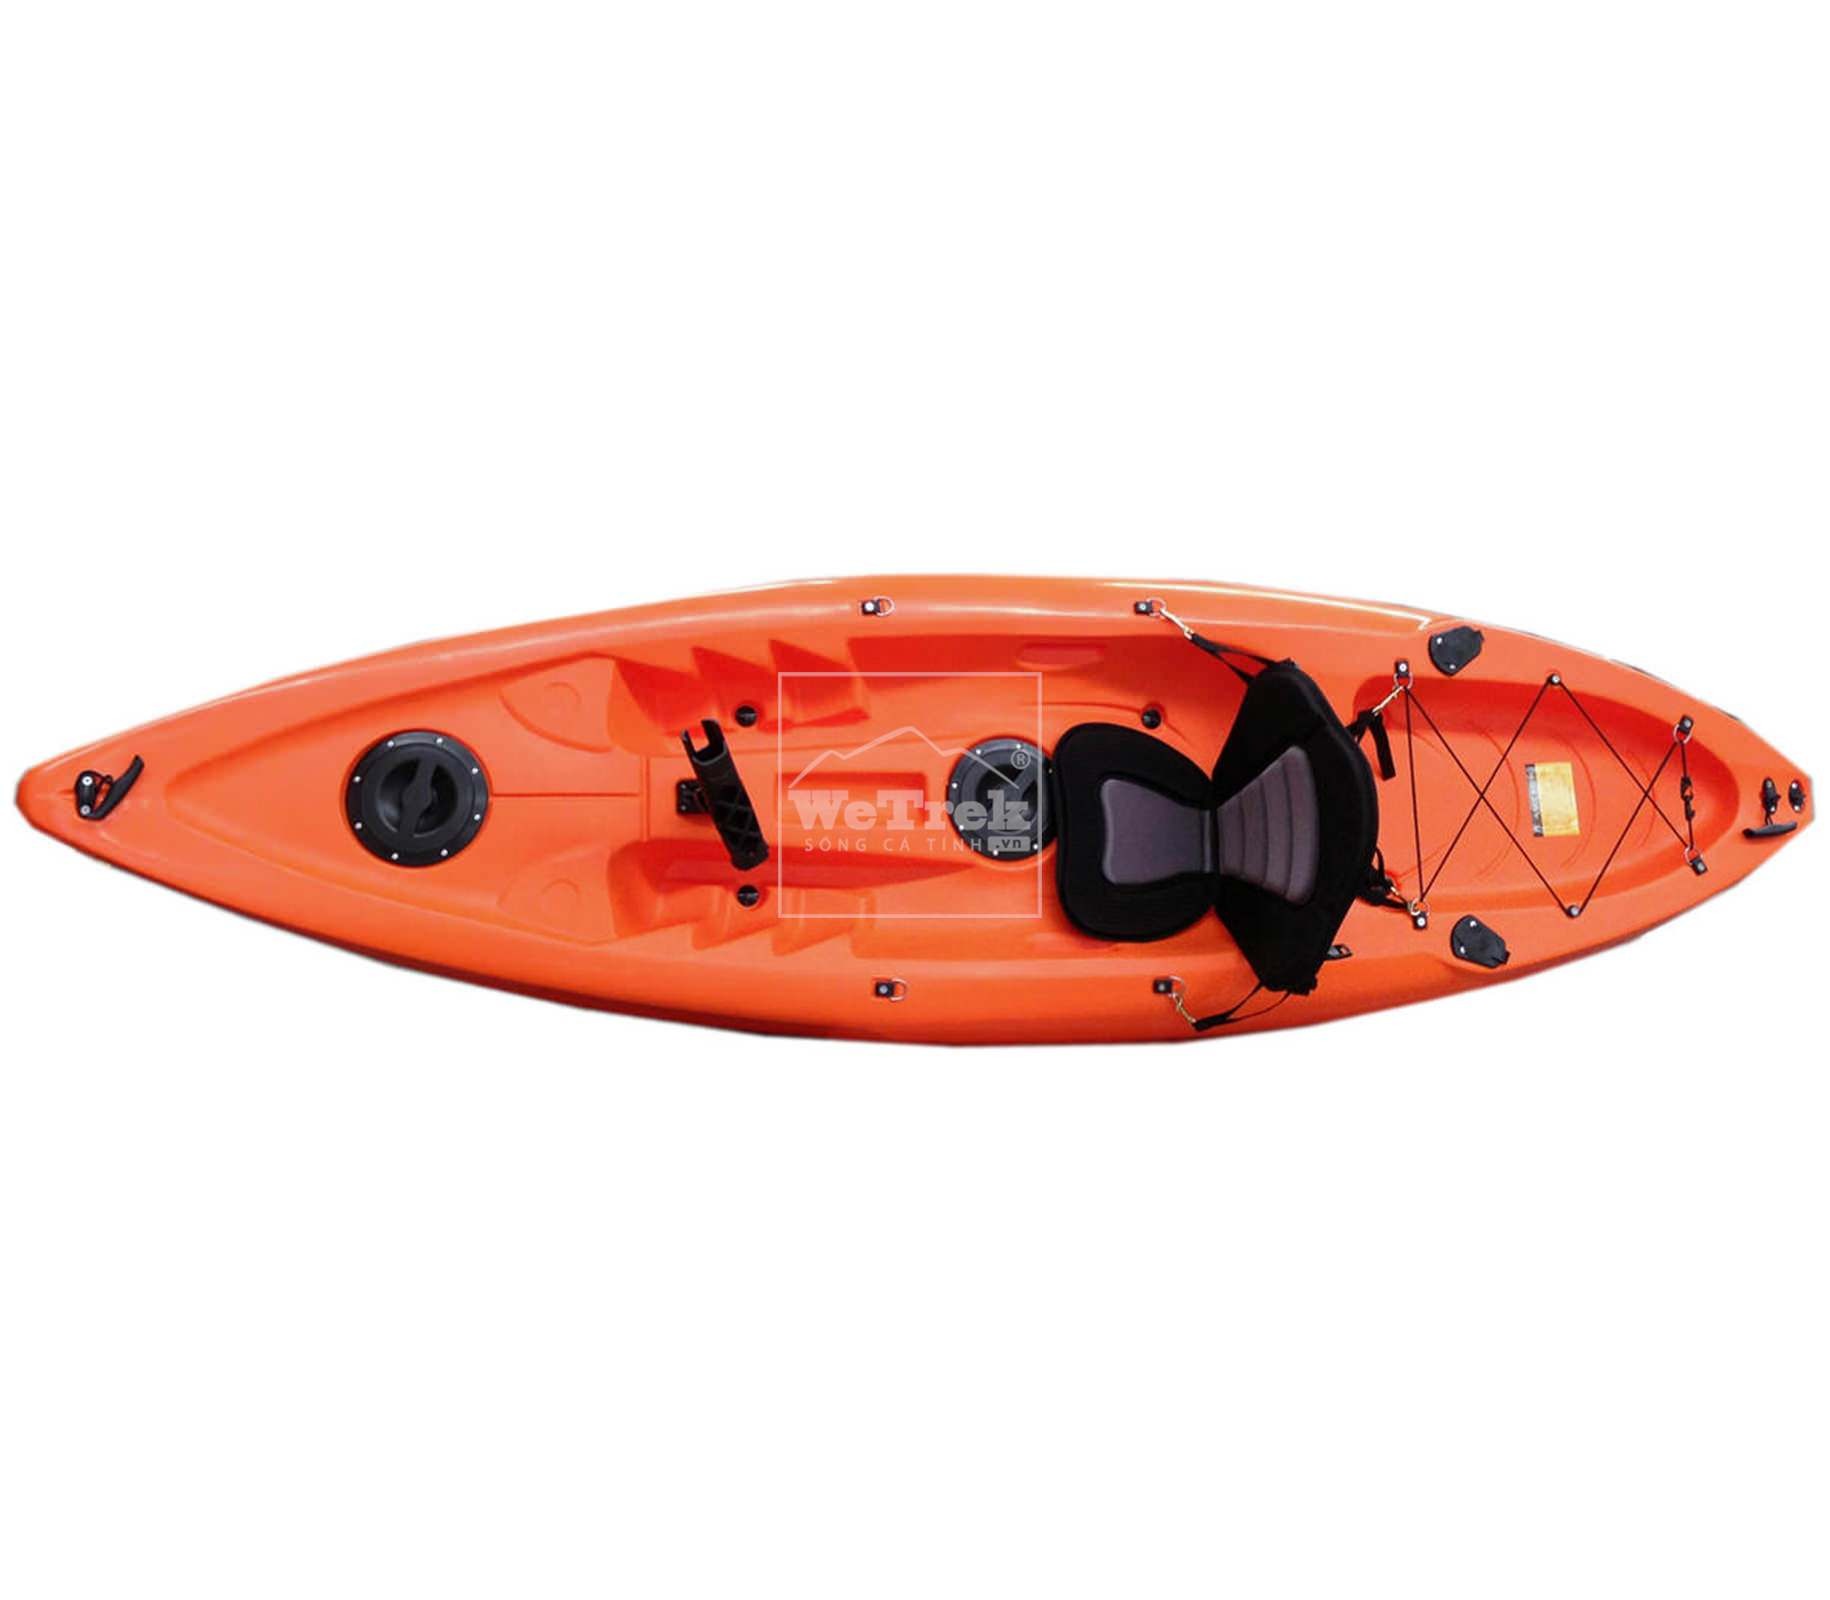 Thuyền Kayak “gây nghiện” đối với giới trẻ năng động